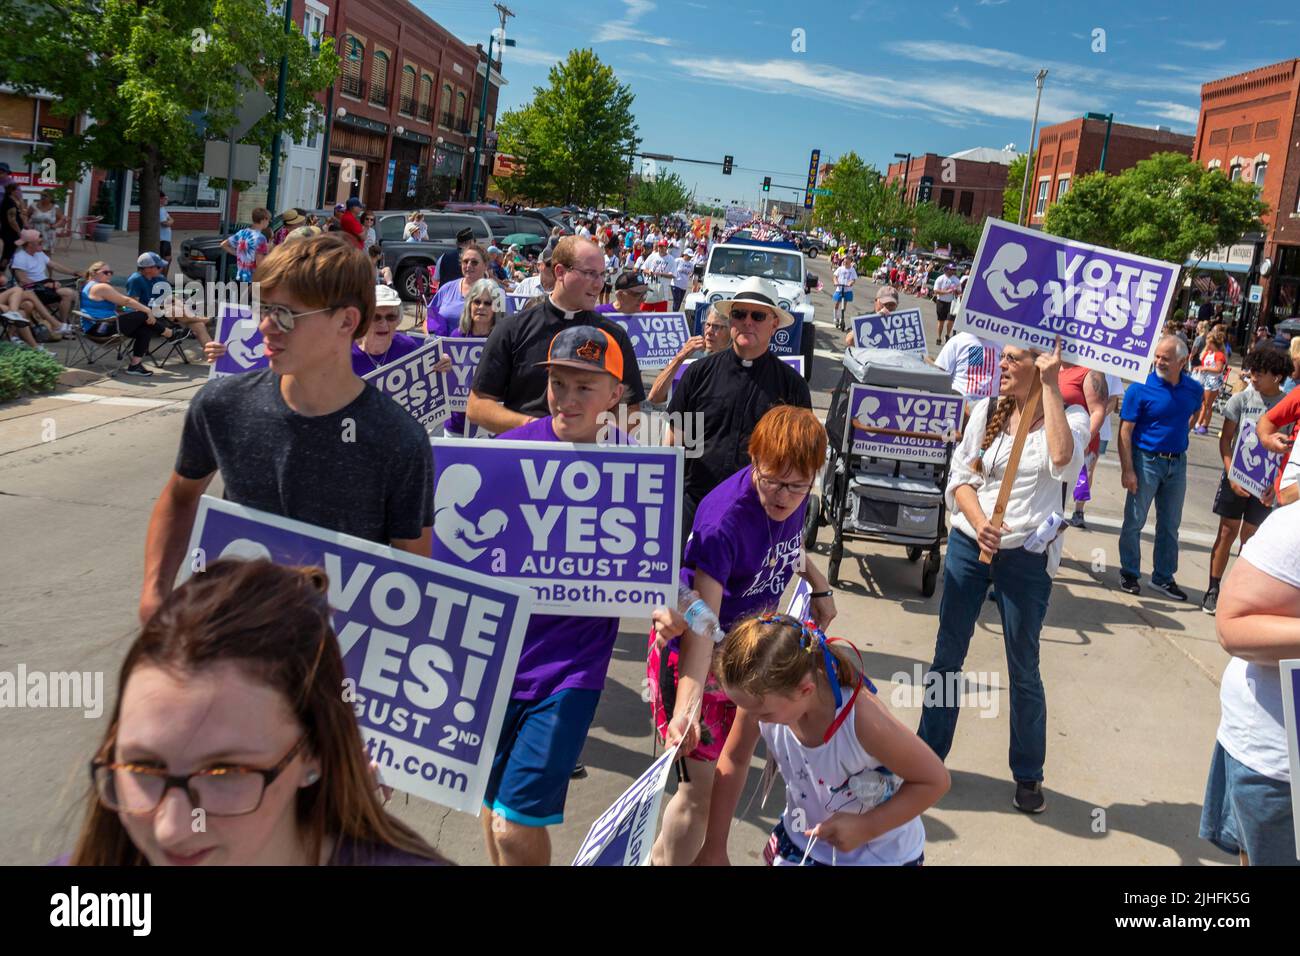 Hutchinson, Kansas - i leader religiosi si uniscono agli attivisti anti-aborto che marciarono nell'annuale Parata dei Patrioti del luglio 4, promuovendo il 'valore di entrambi' c Foto Stock